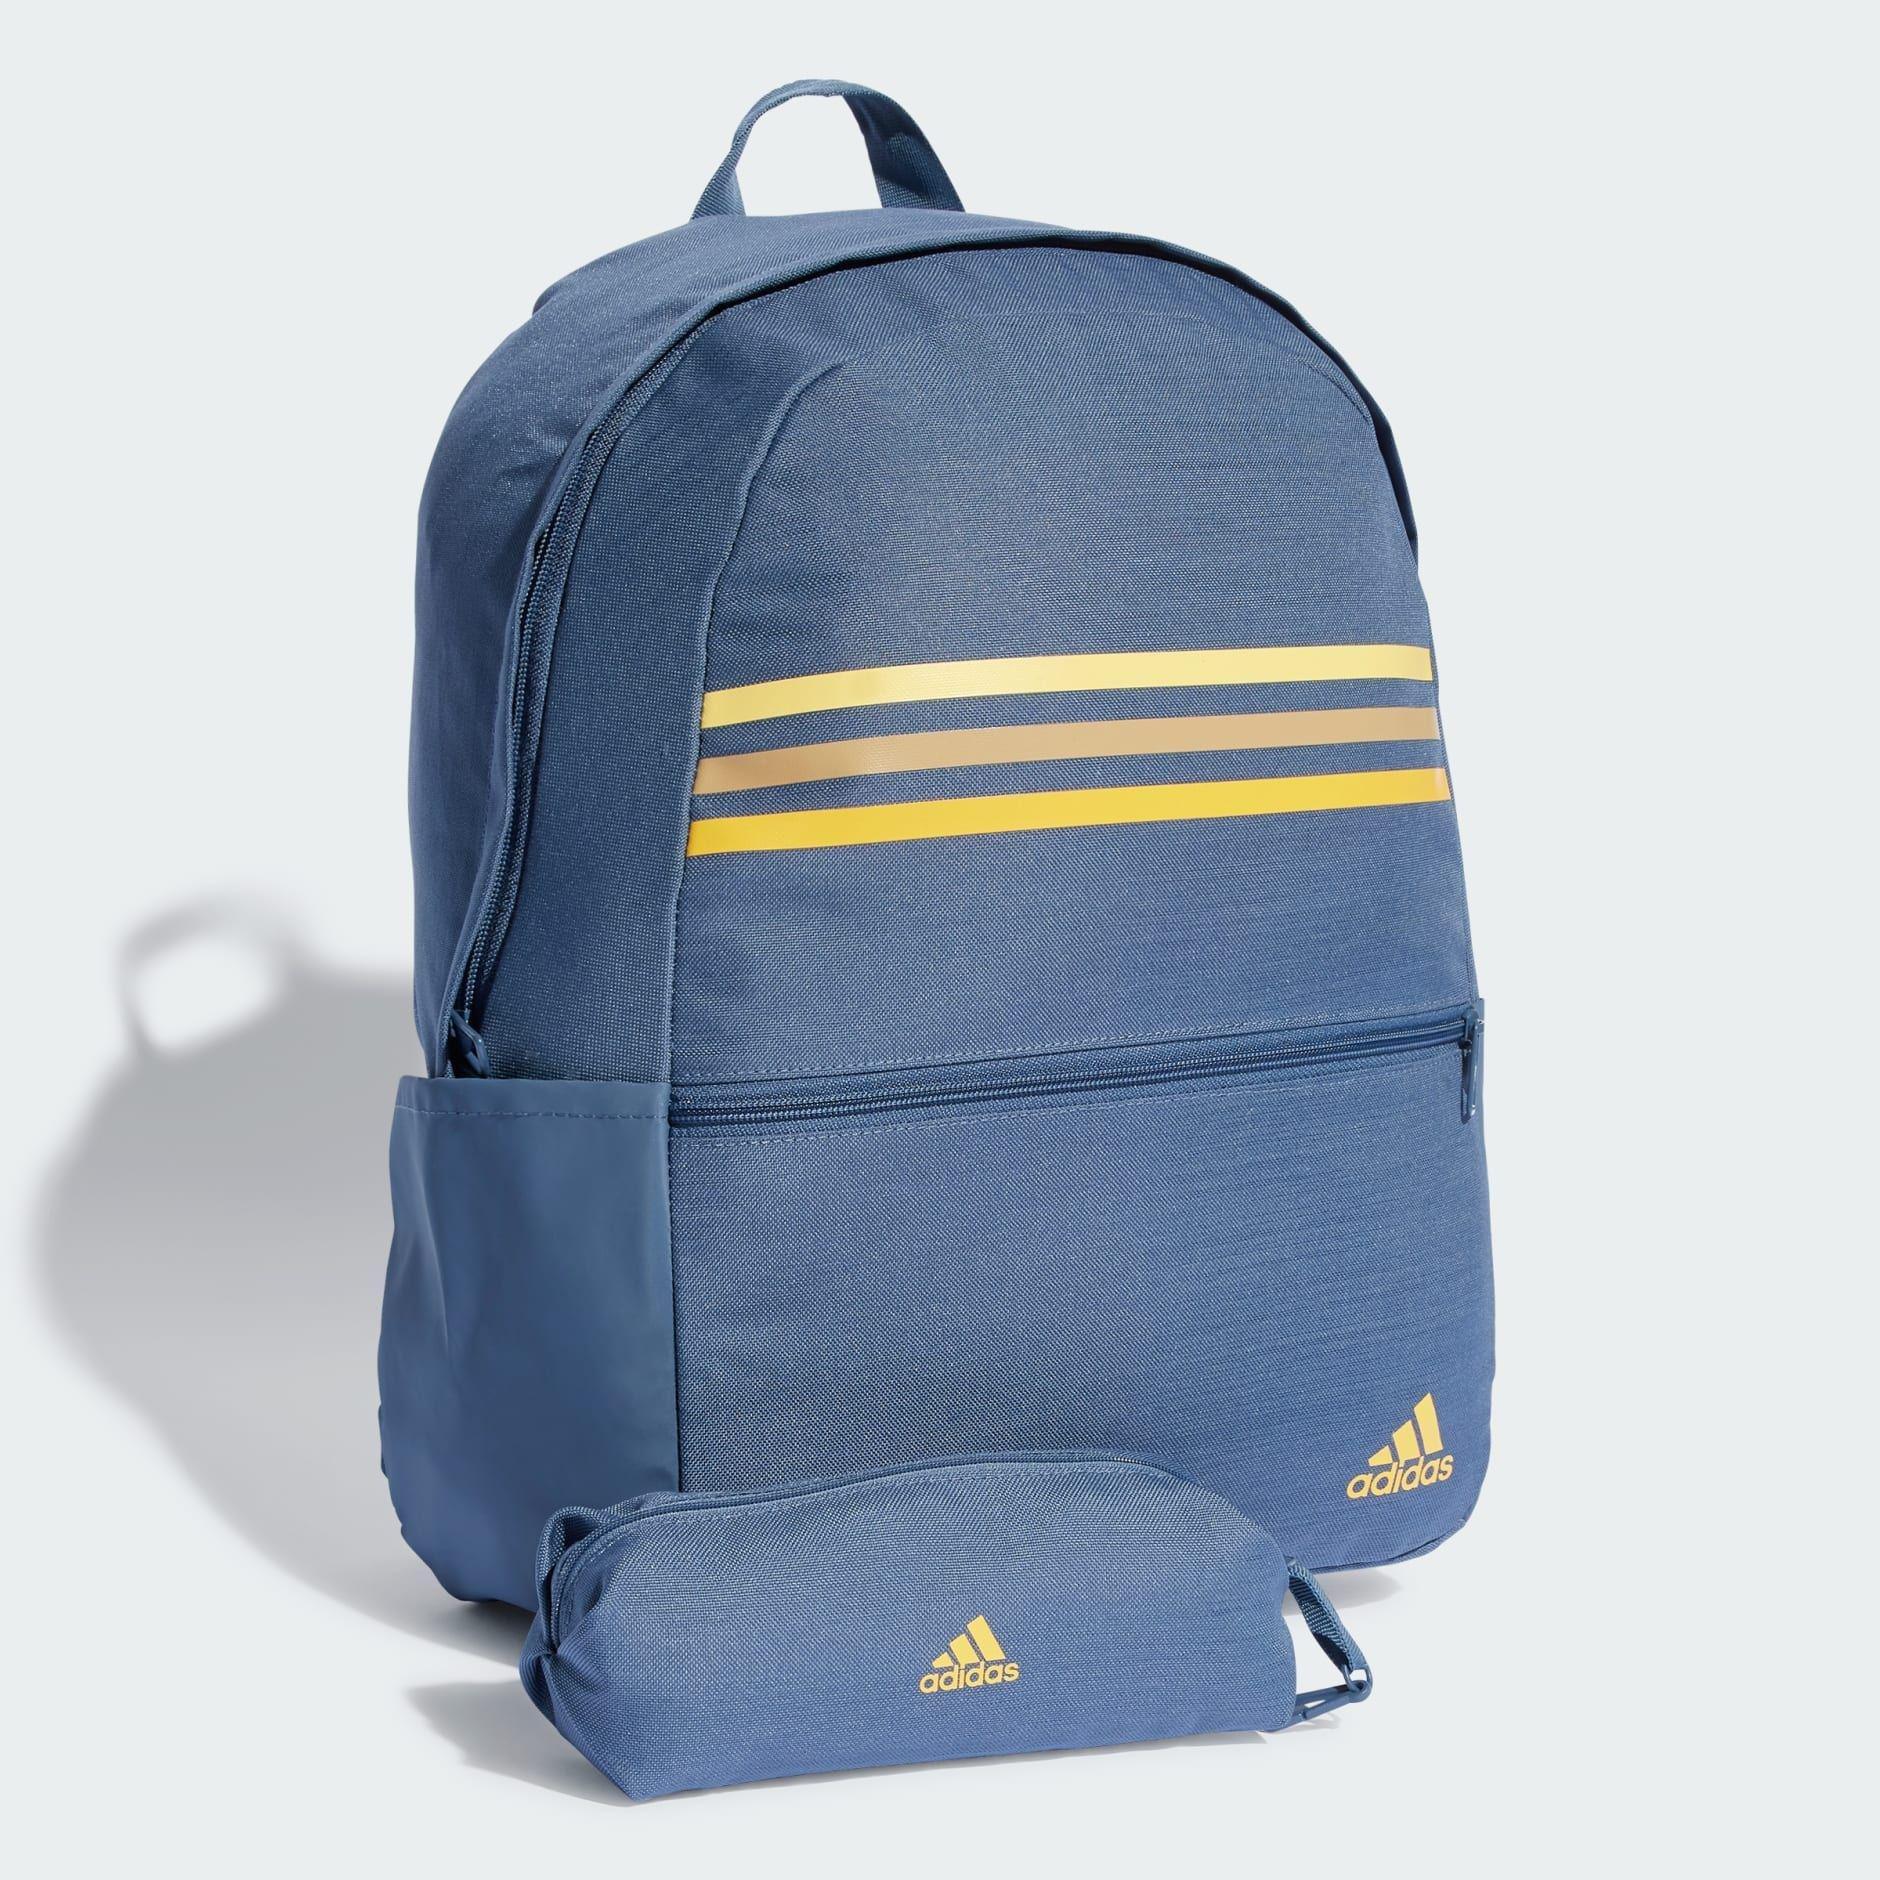 adidas - Unisex Classic Horizontal 3-Stripes Backpack, Blue